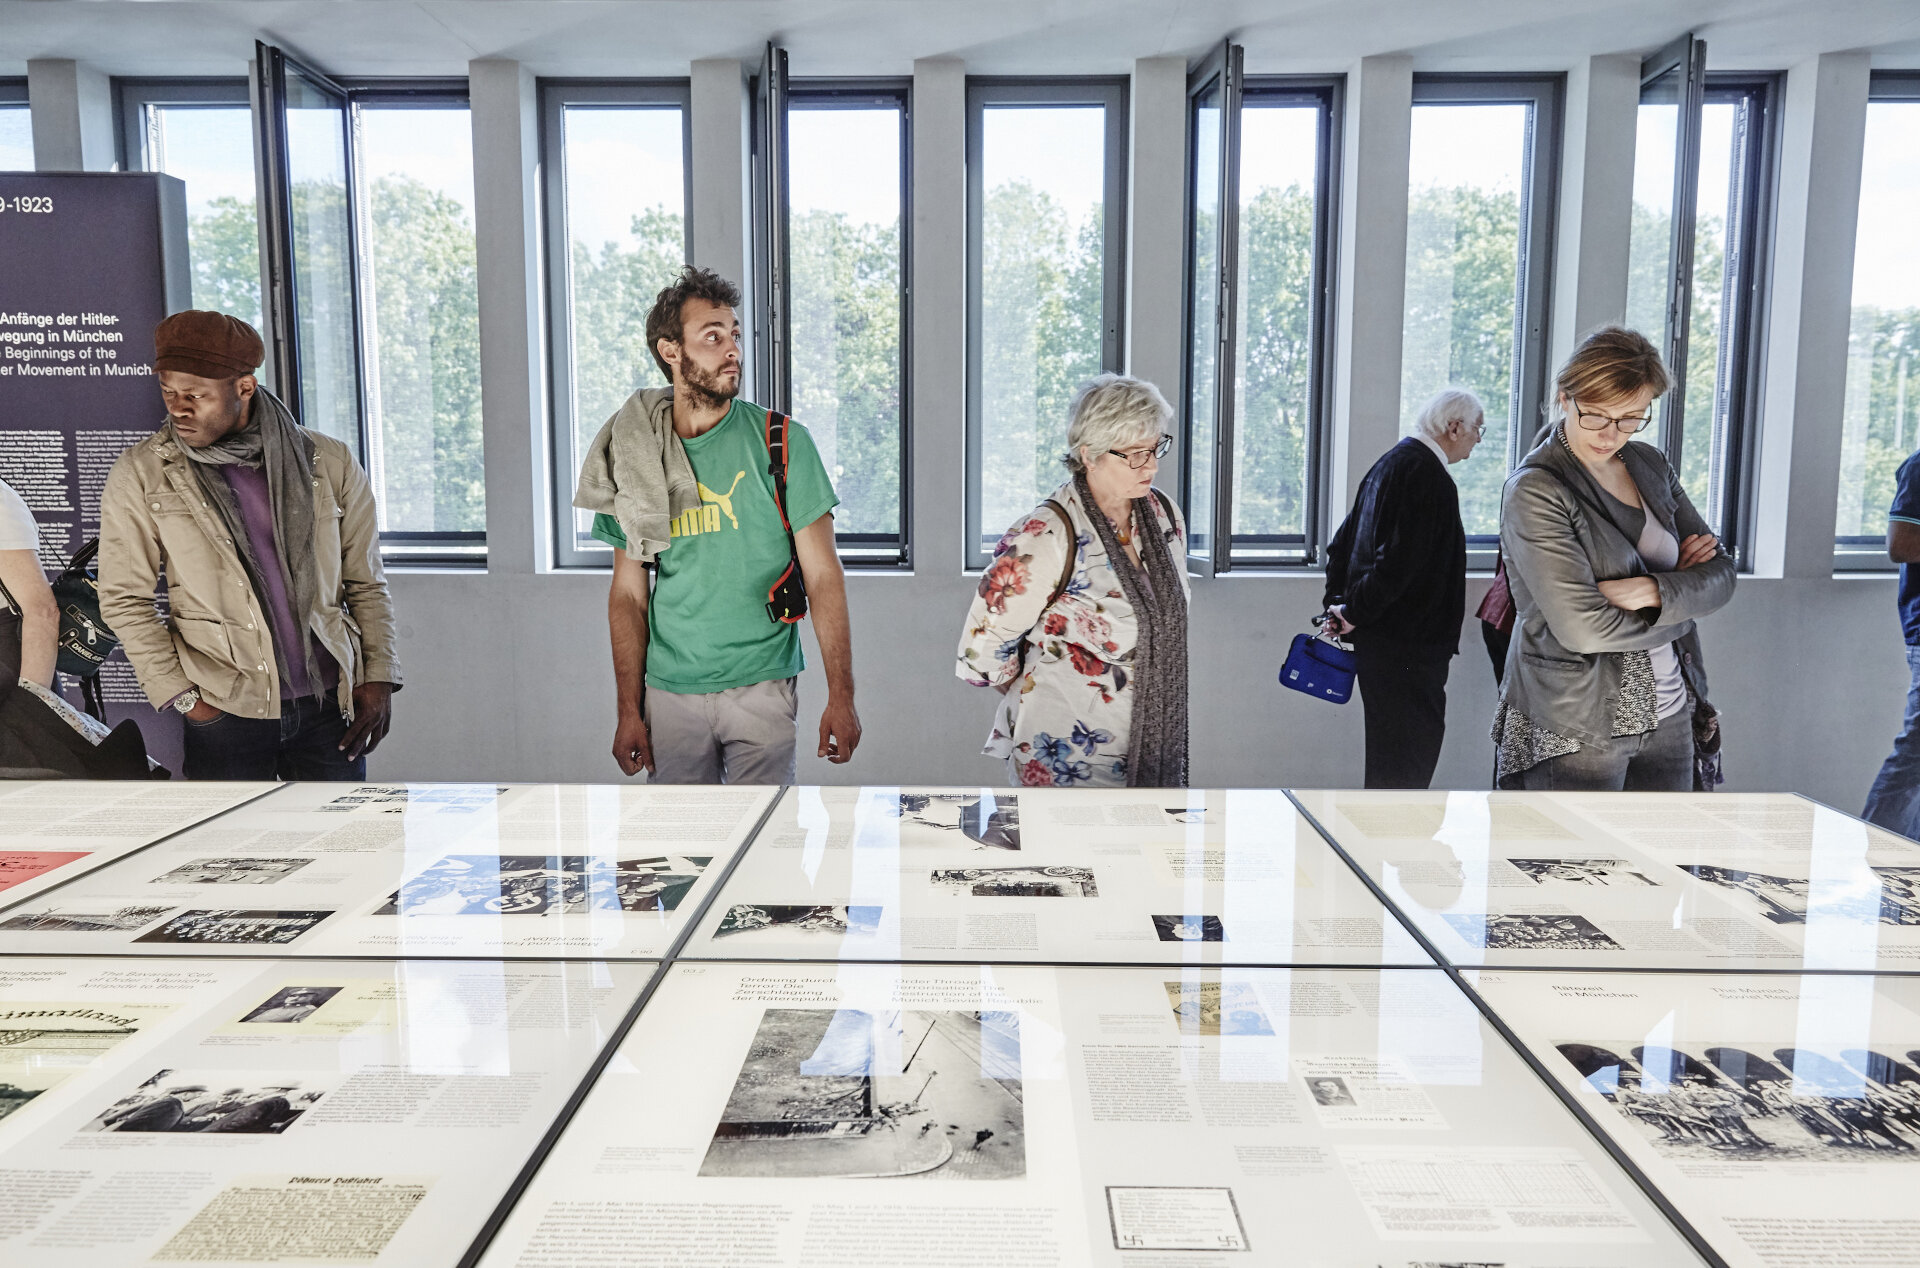 Personen blicken auf einen Tisch mit Ausstellungstexten, Bildern und Dokumenten. 